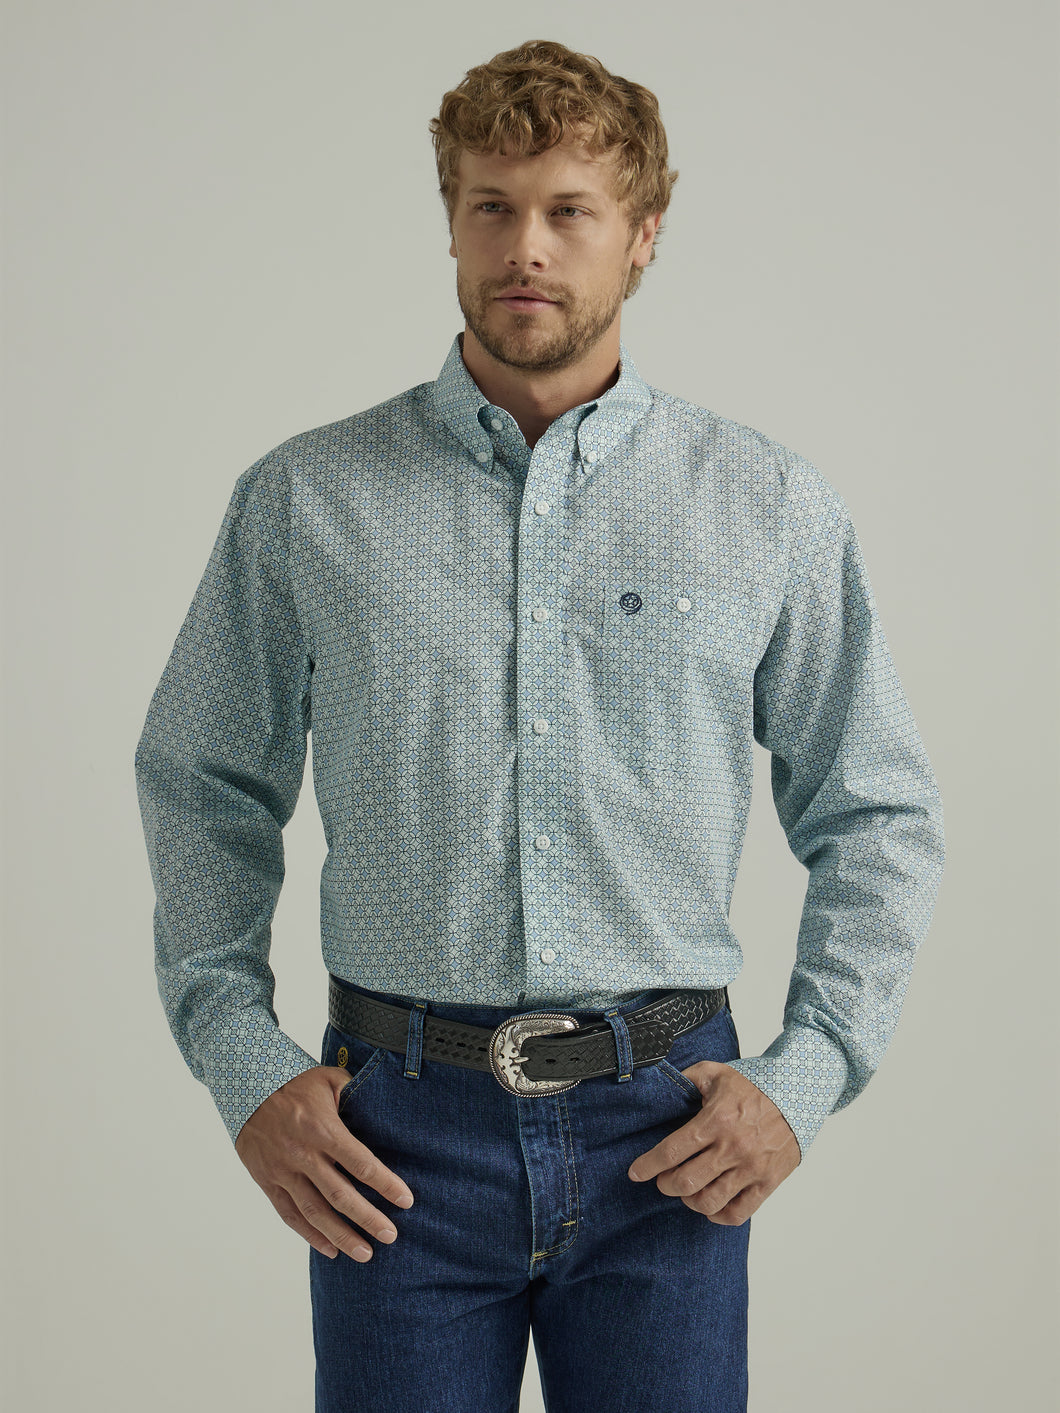 Pard's Western Shop Wrangler Men's George Strait Collection Light Blue Geometric Print Button-Down Shirt